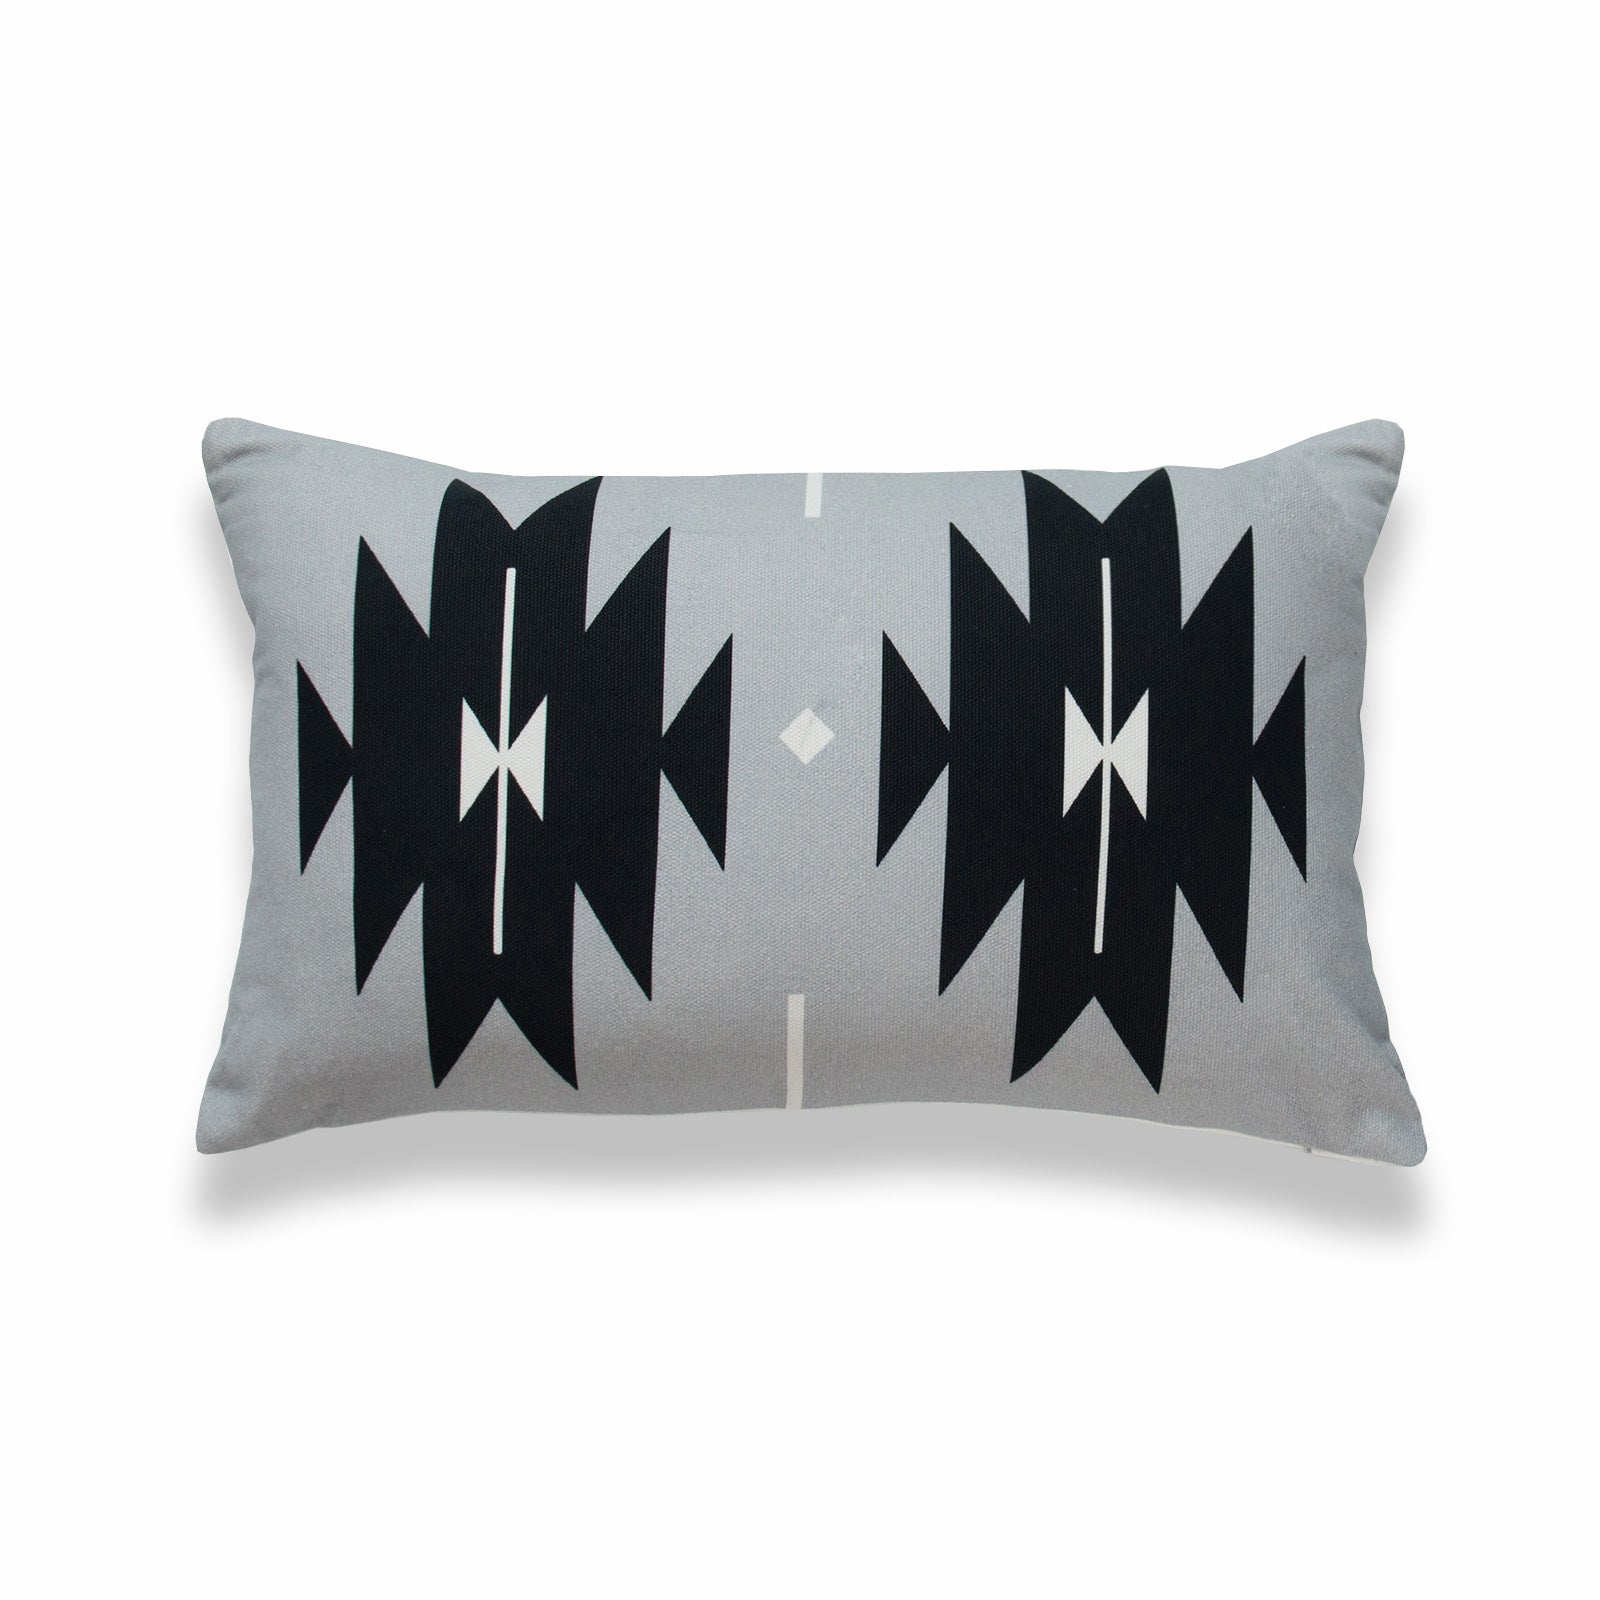 Aztec Print Lumbar Pillow Cover, Diamond, Gray Black, 12"x20"